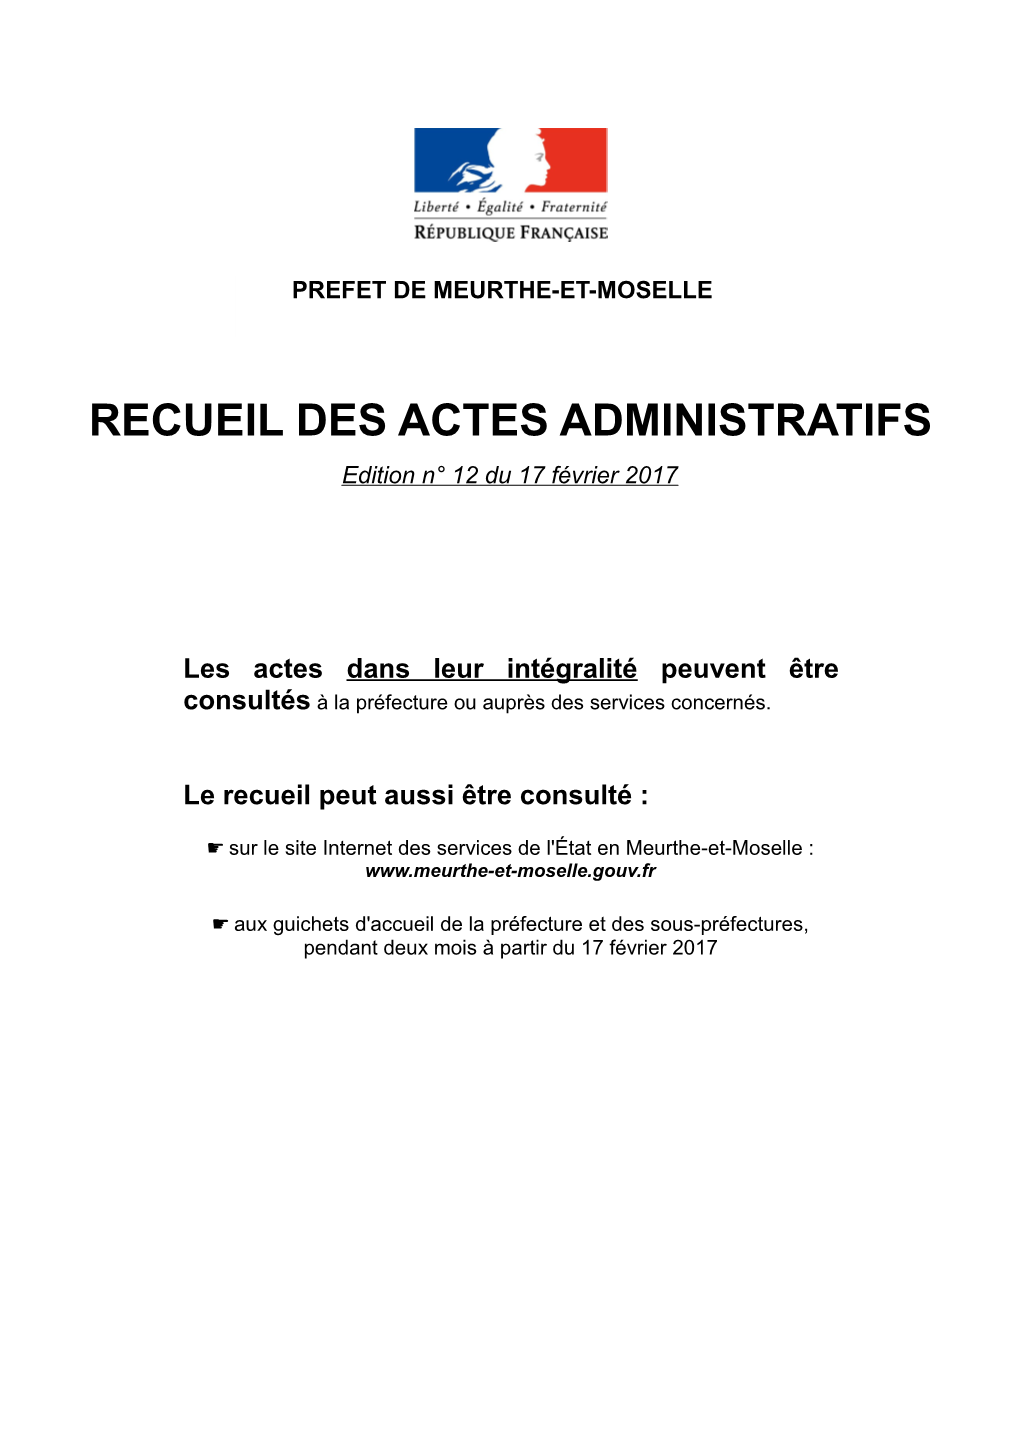 RECUEIL DES ACTES ADMINISTRATIFS Edition N° 12 Du 17 Février 2017